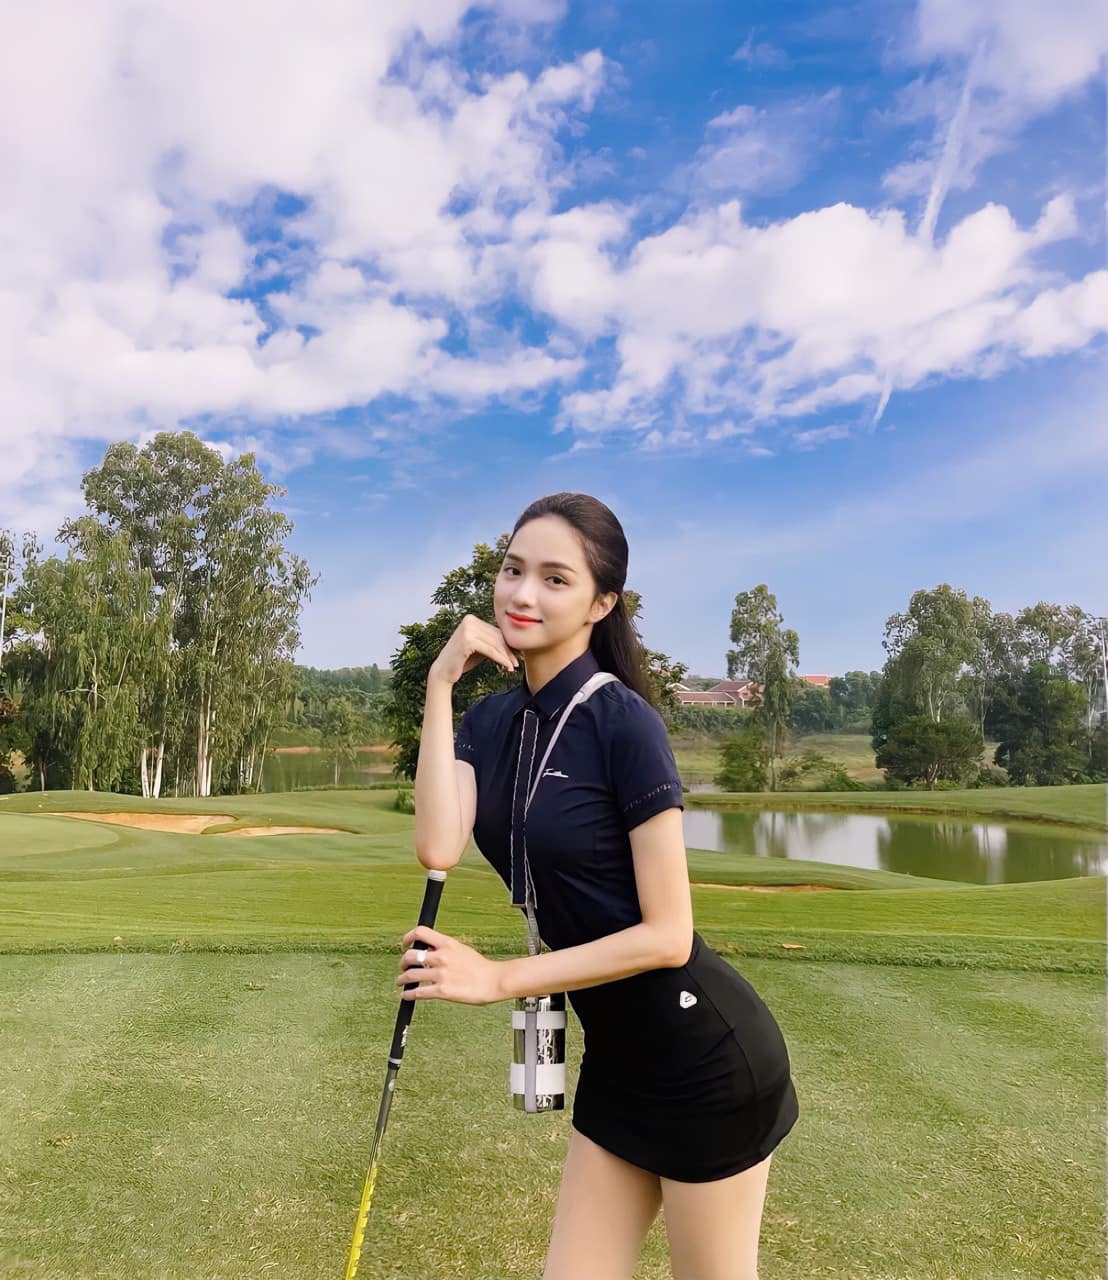 Hoa hậu Hương Giang liên tục khoe ảnh đi tập golf sau khi quay trở lại mạng xã hội. Trong bức hình mới, cô nhận được lời khen với đường cong quyến rũ, vẻ ngoài rạng ngời.